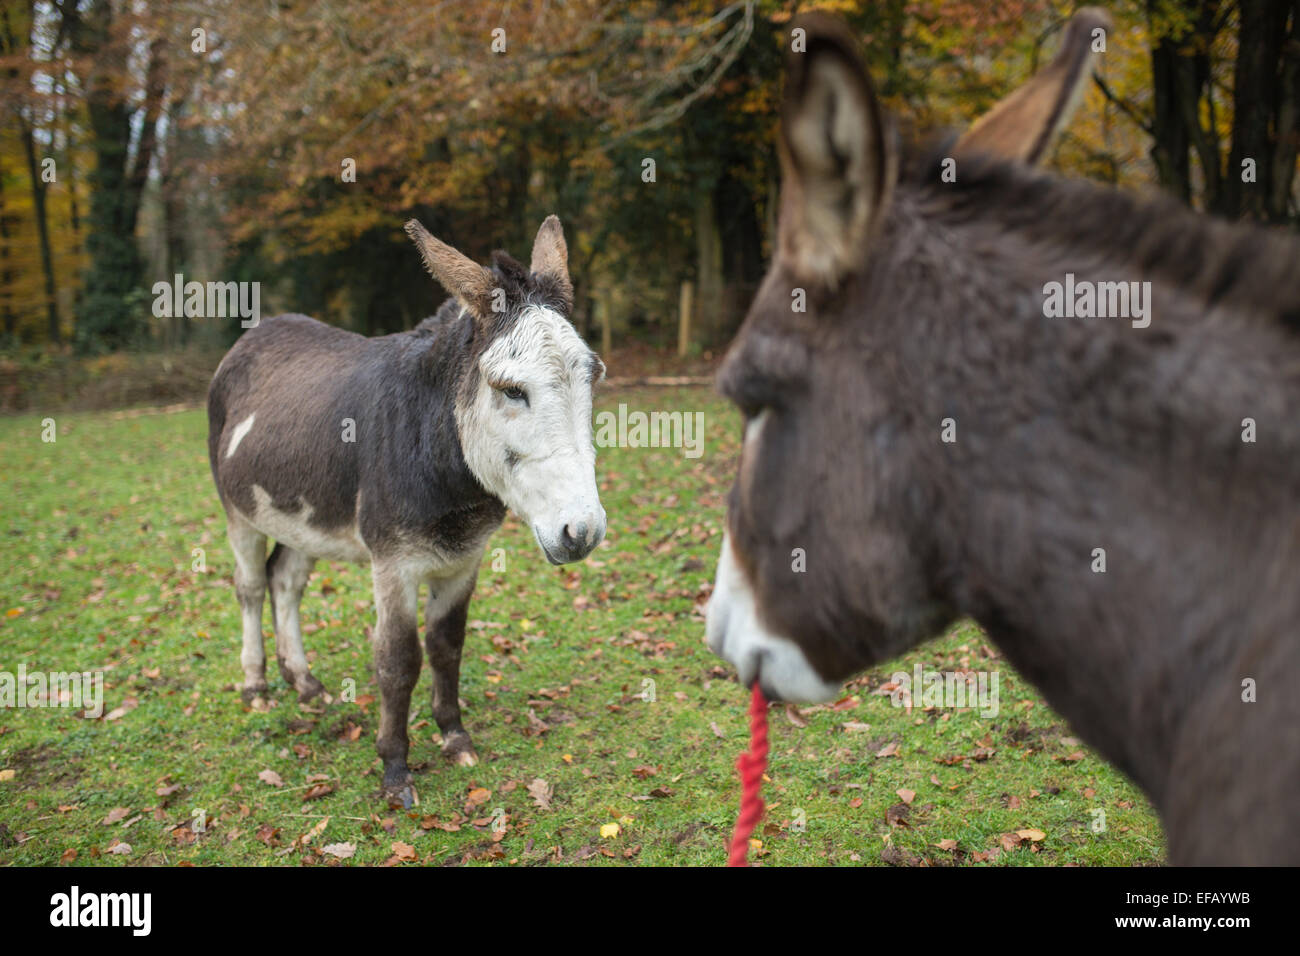 Skewbald Donkey. Stock Photo